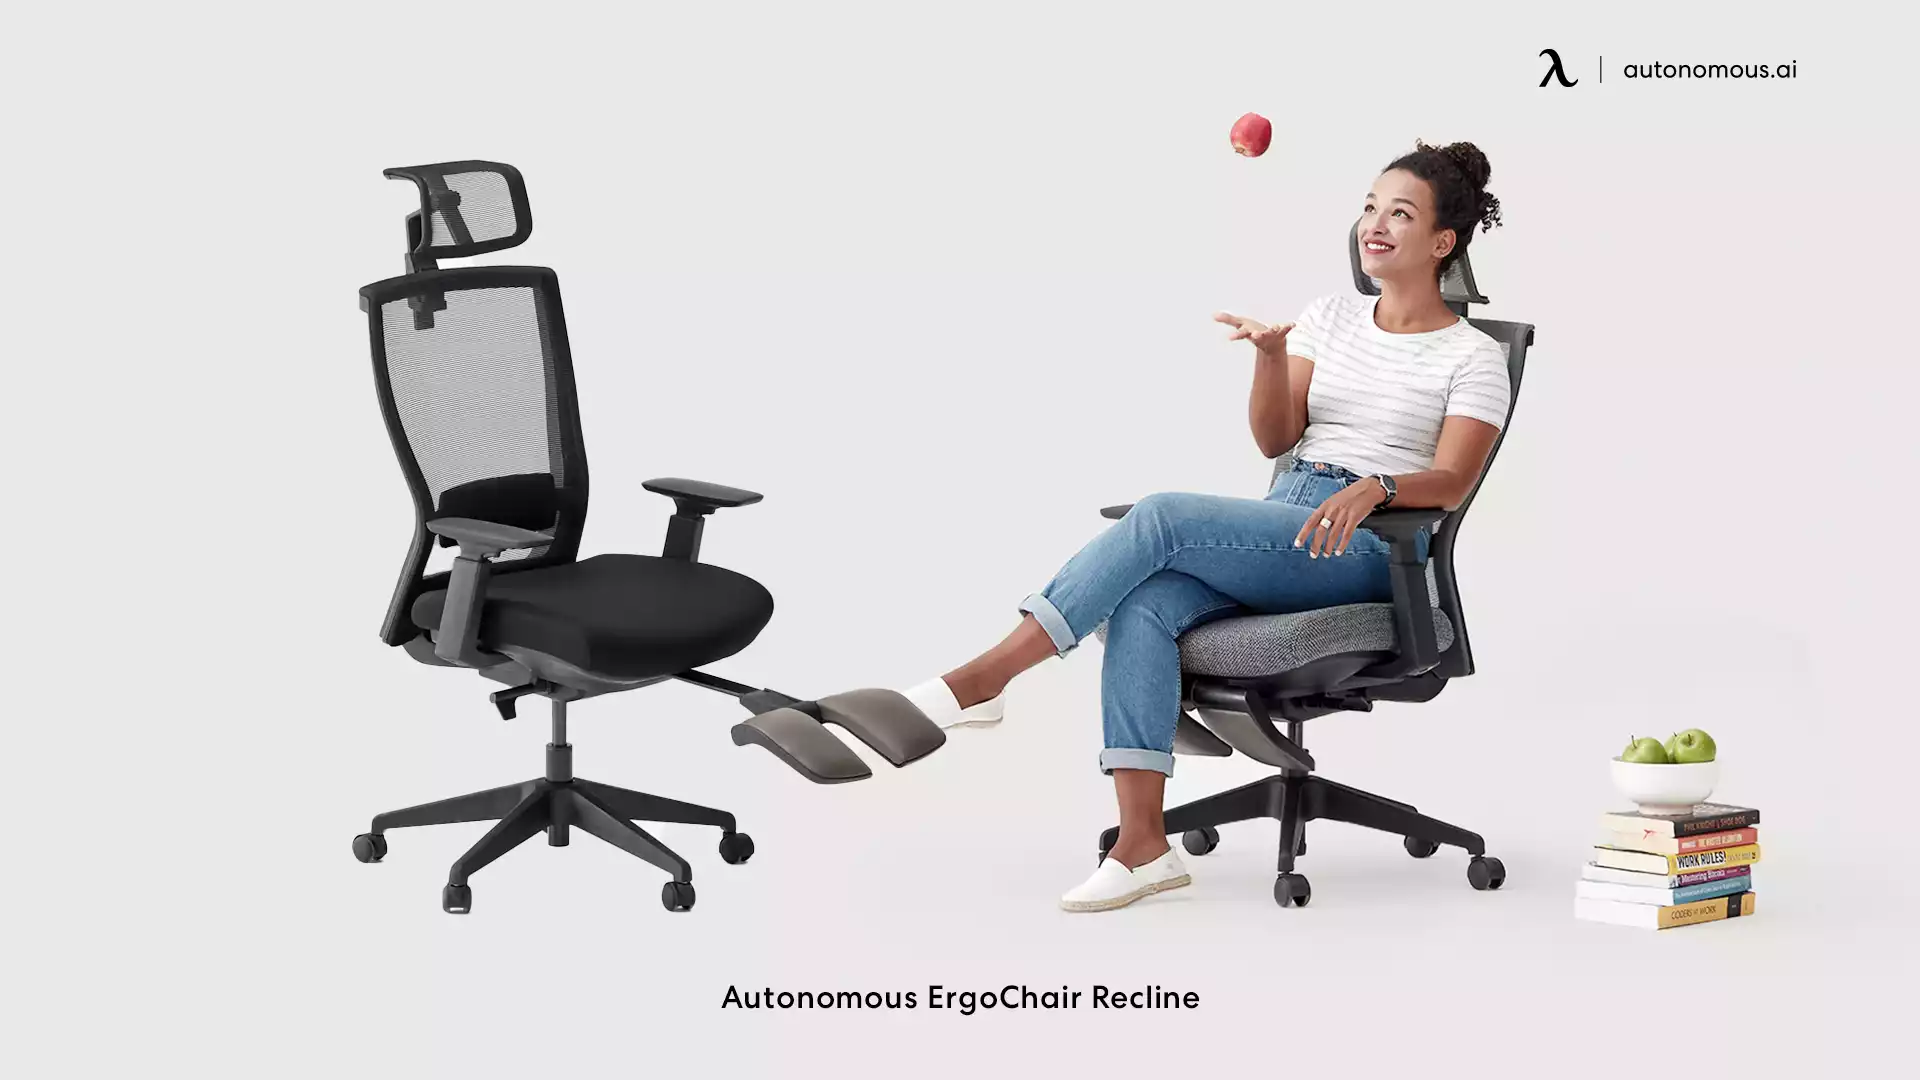 ErgoChair Recline mesh office chair